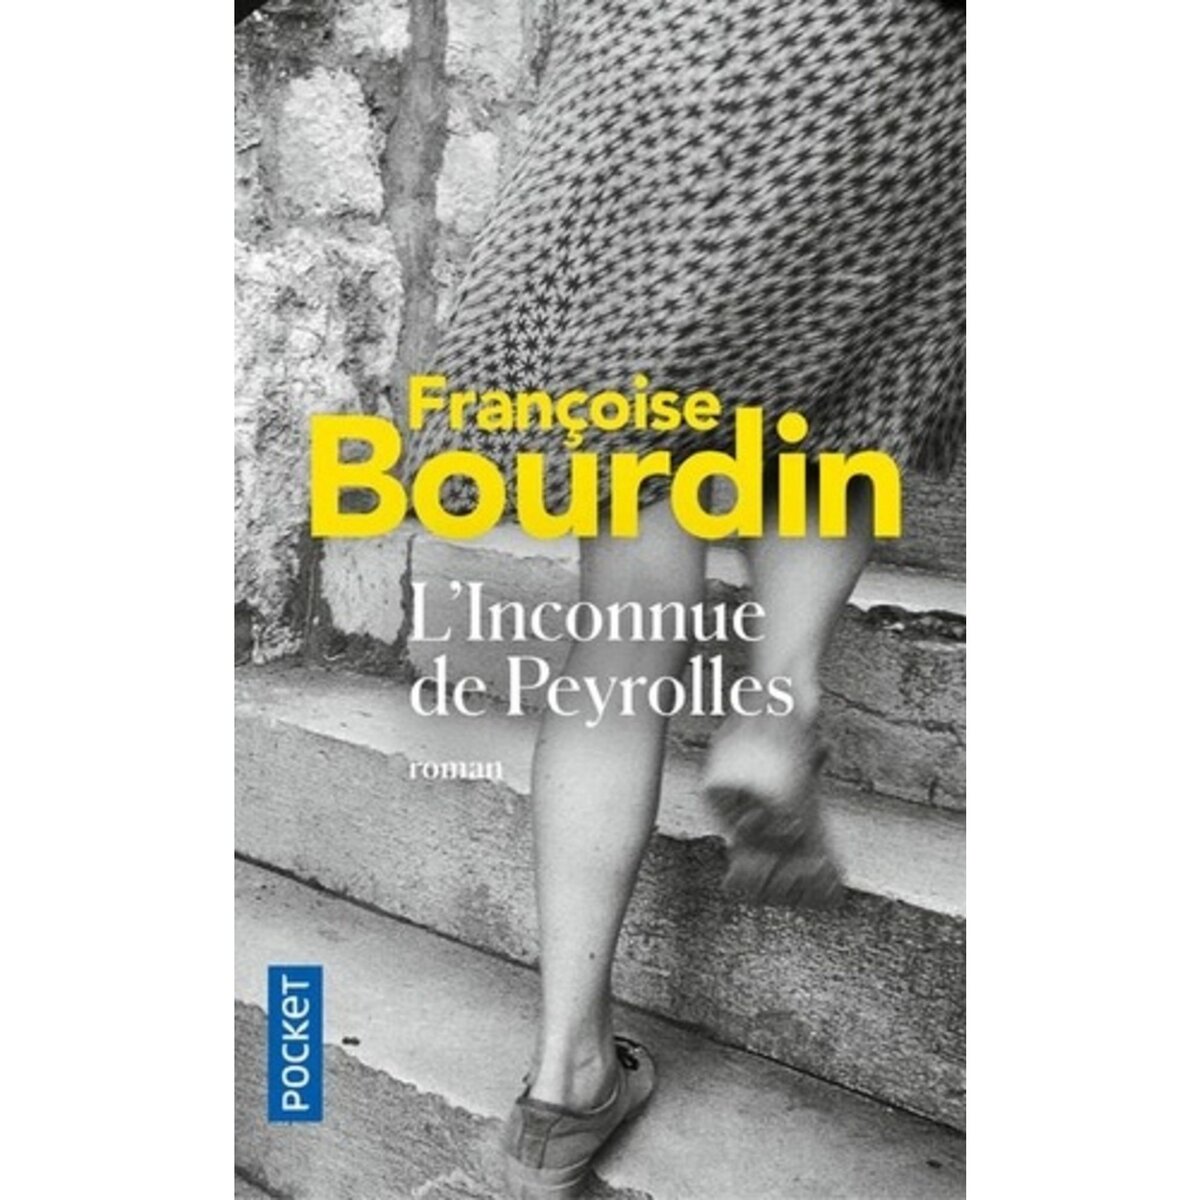  L'inconnue de Peyrolles, Bourdin Françoise